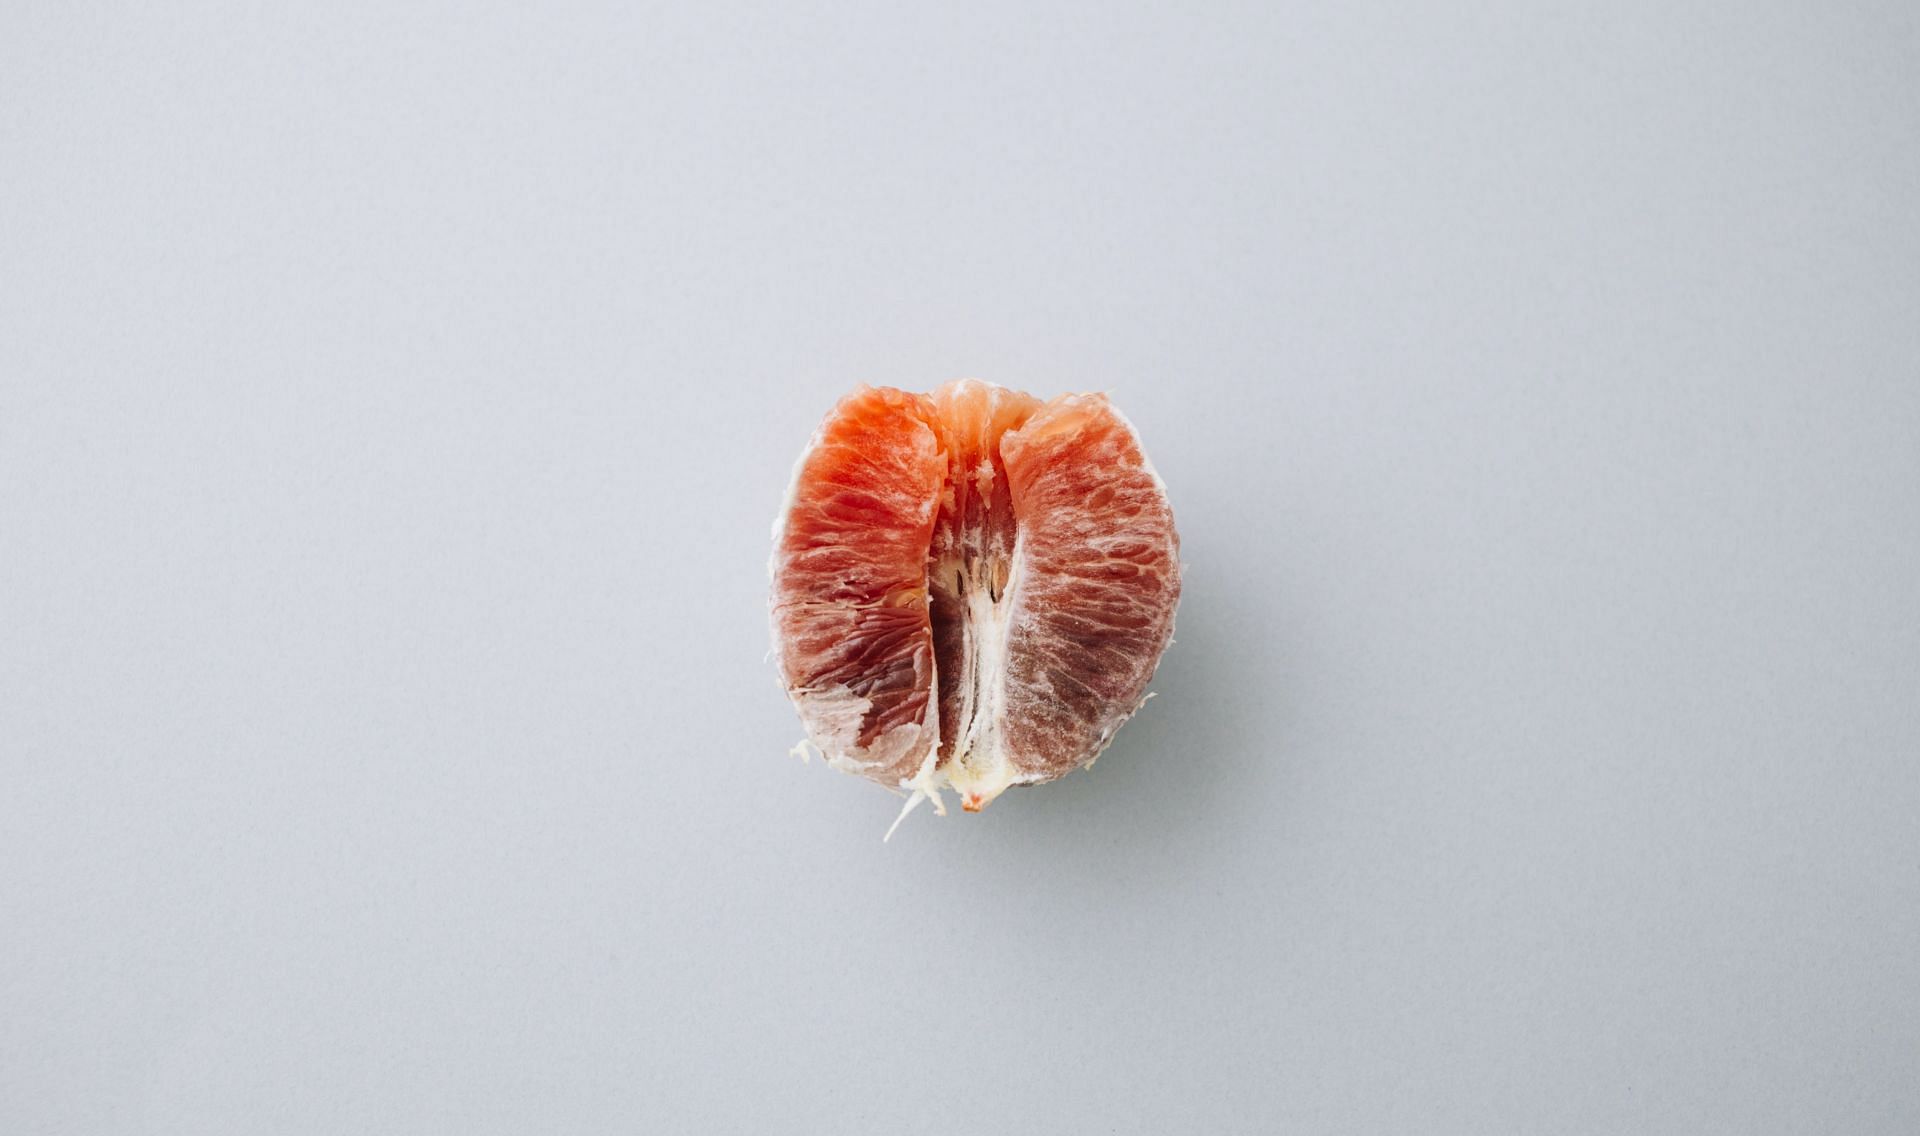 Side effects of blood orange (Image via Unsplash/Charlesdeluvio)